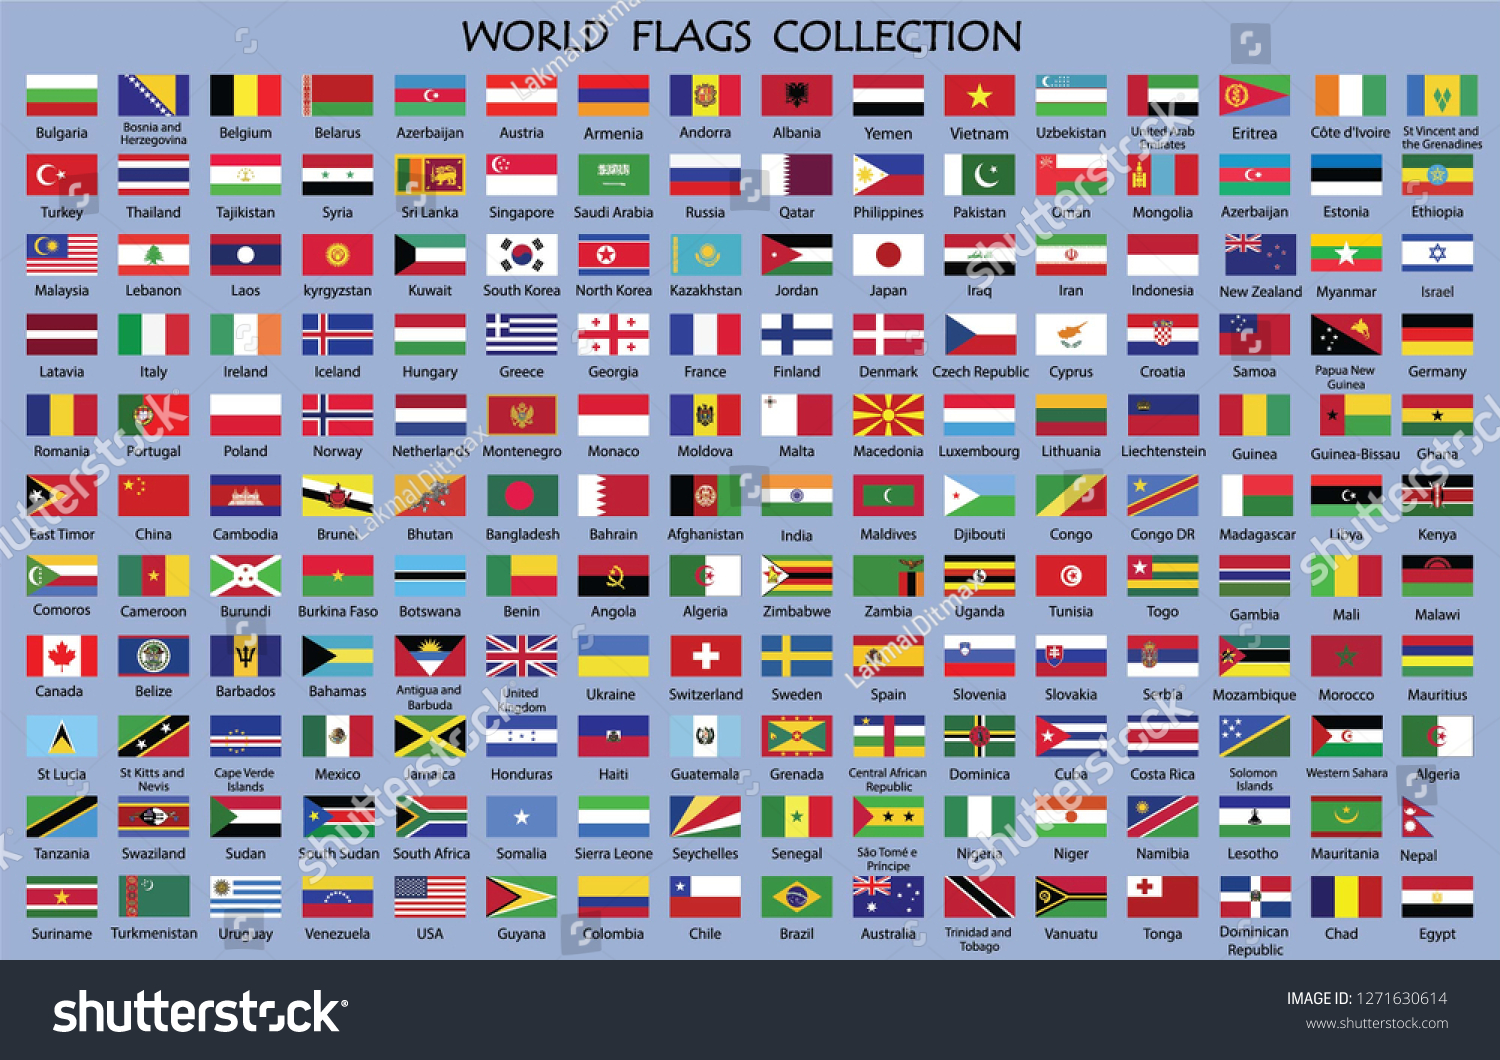 Государственные флаги всех стран с названиями на русском языке фото